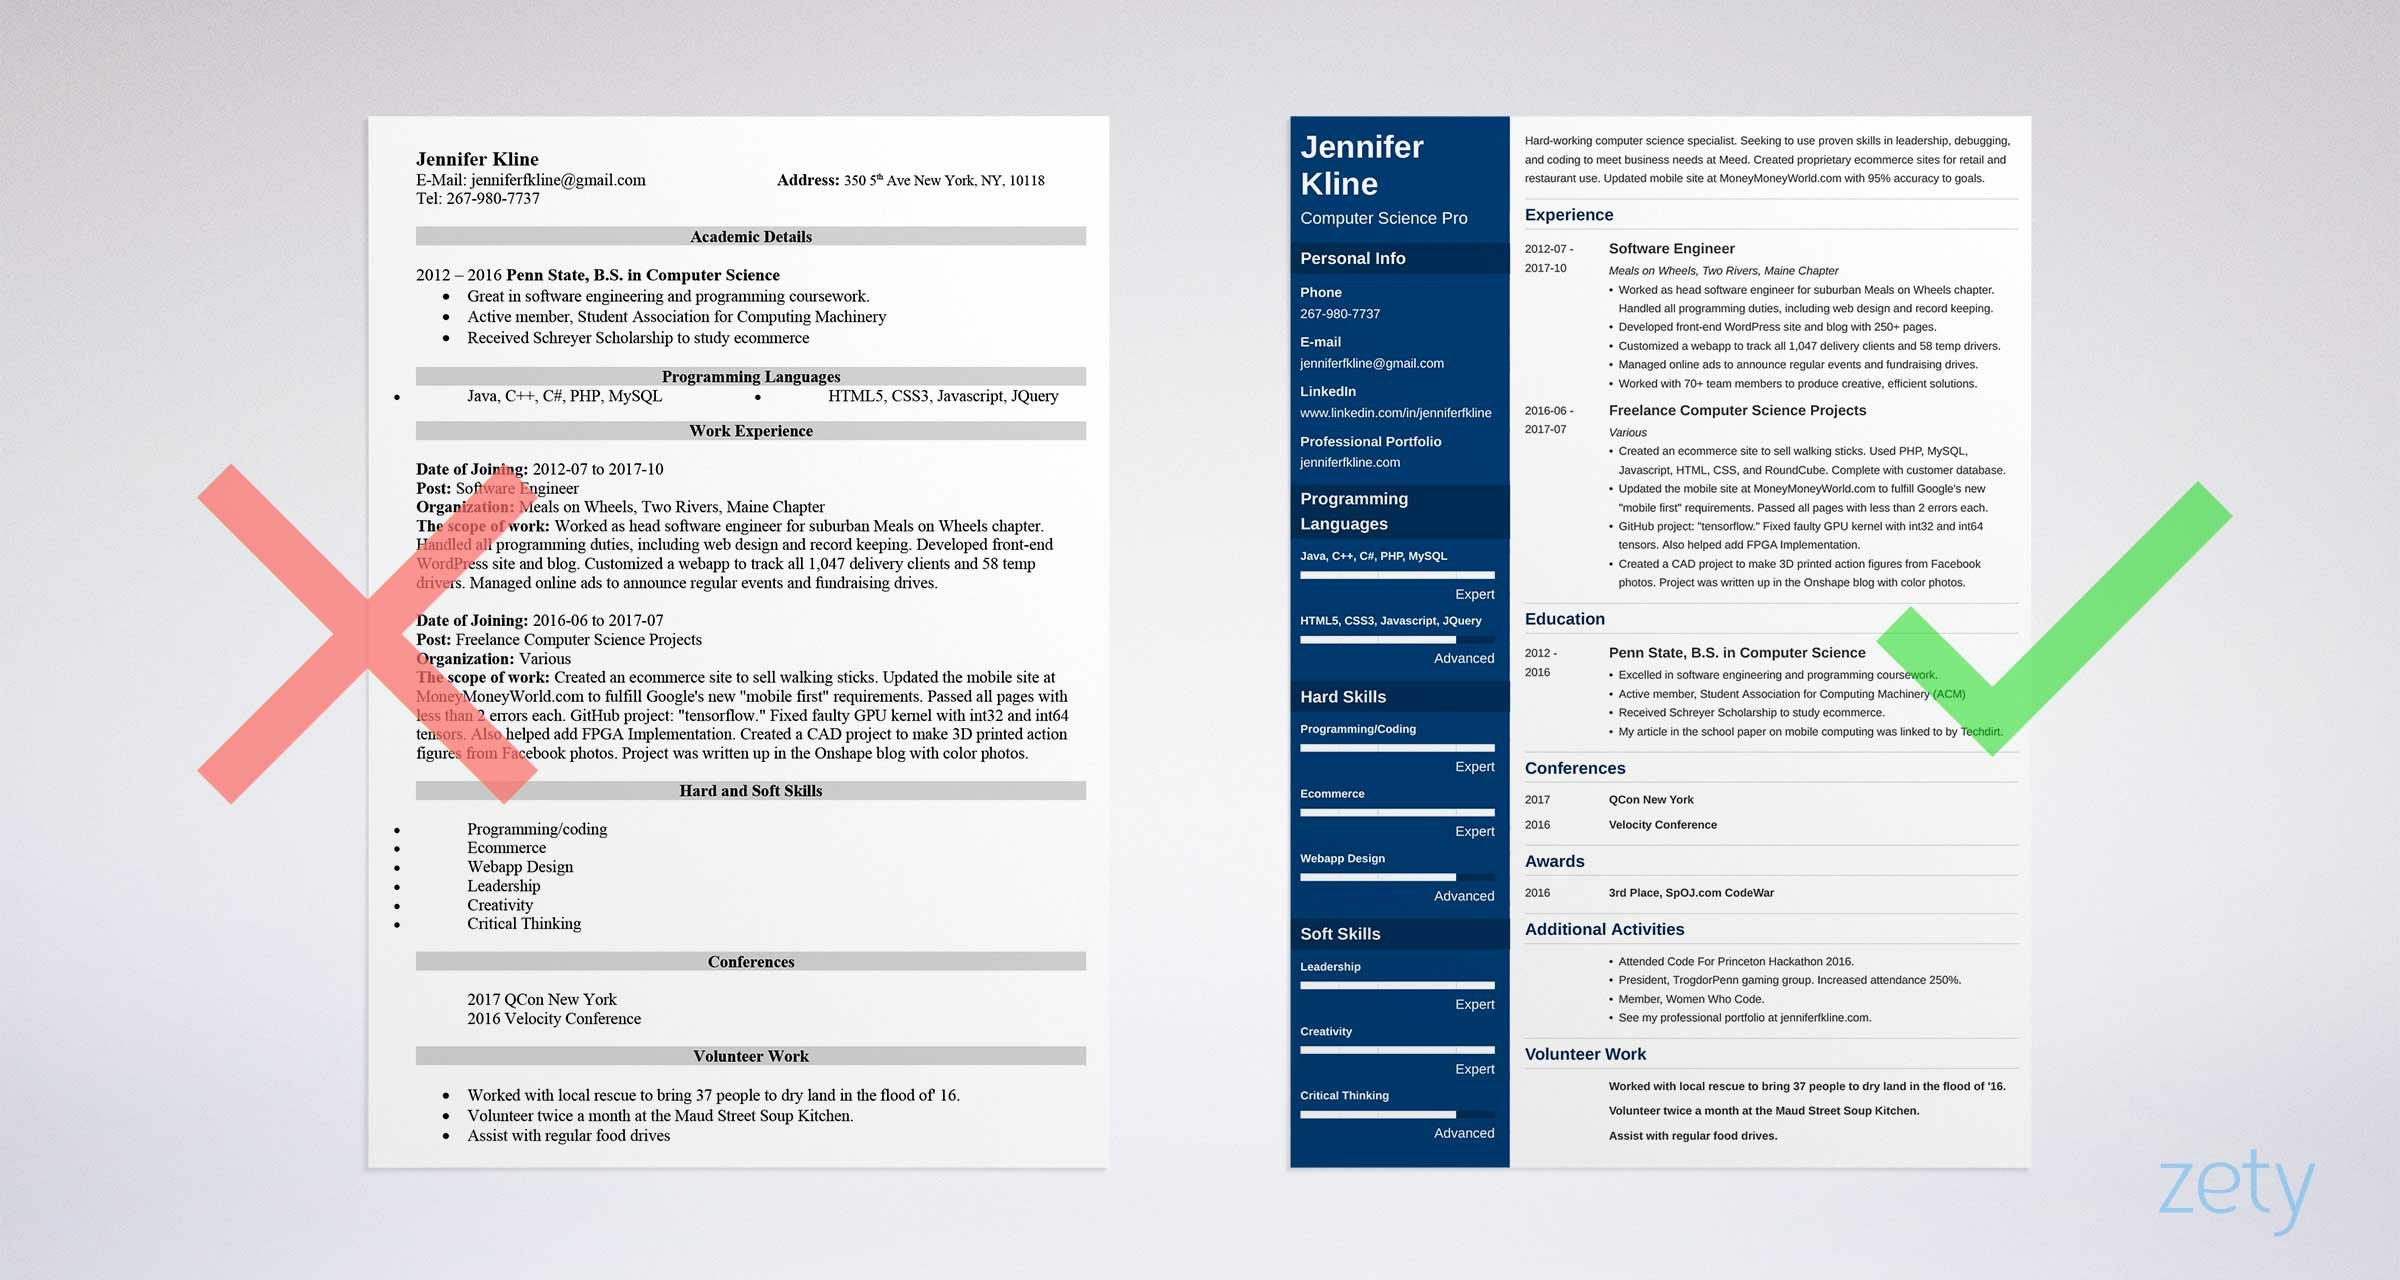 Samples Of Resume Volunteer Work Example How to List Volunteer Work Experience On A Resume: Example